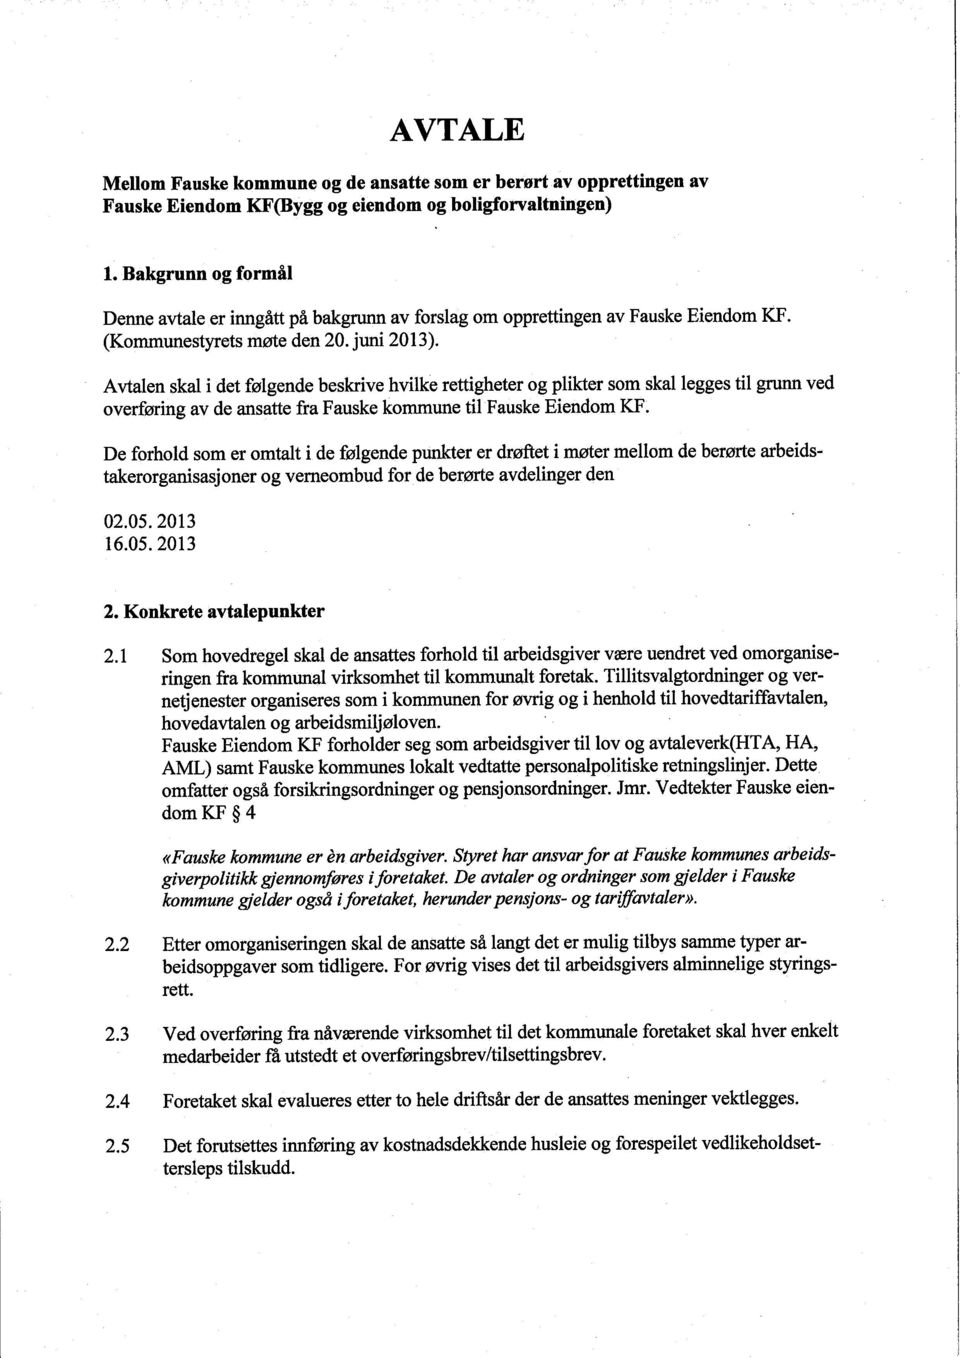 Avtalen skal i det følgende beskrive hvilke rettigheter og plikter som skal legges til gru ved overføring av de ansatte fra Fauske kommune til Fauske Eiendom KF.